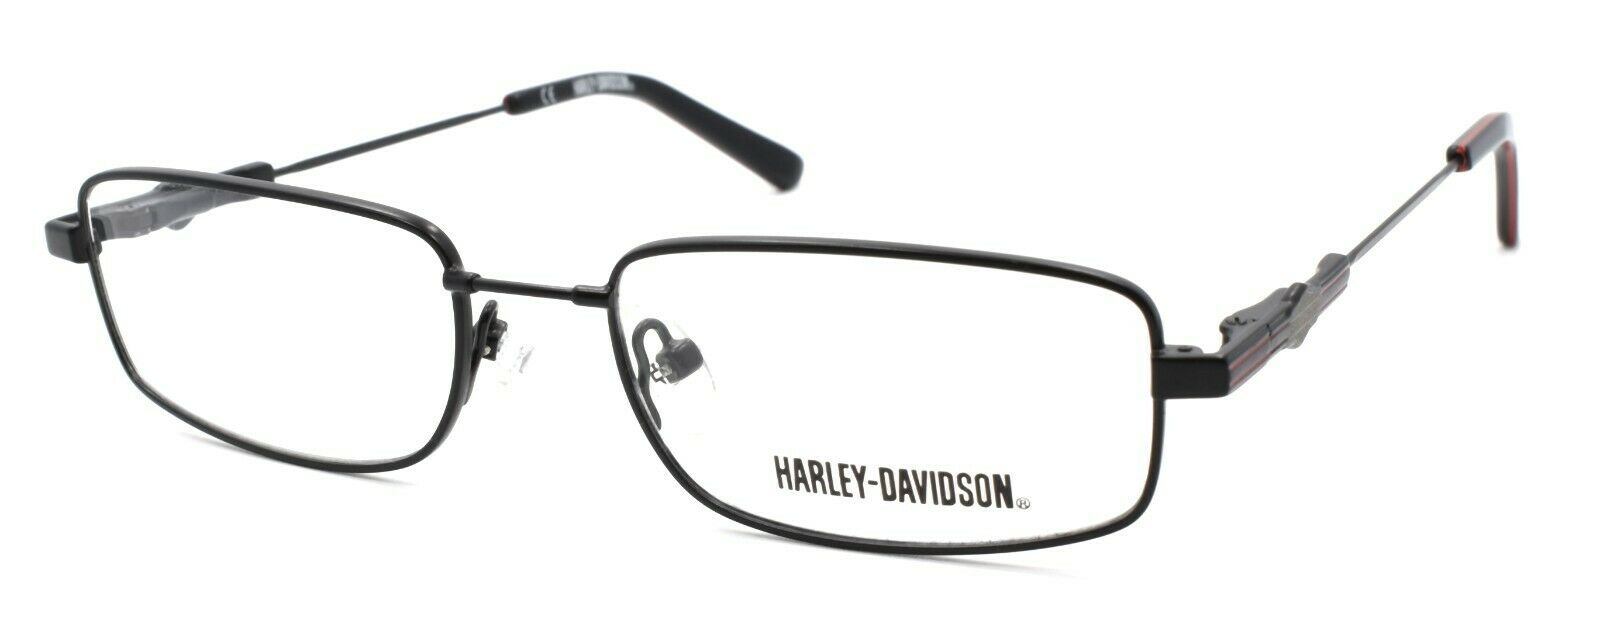 1-Harley Davidson HDT109 BLK Eyeglasses Frames SMALL 49-16-130 Black + CASE-715583267039-IKSpecs